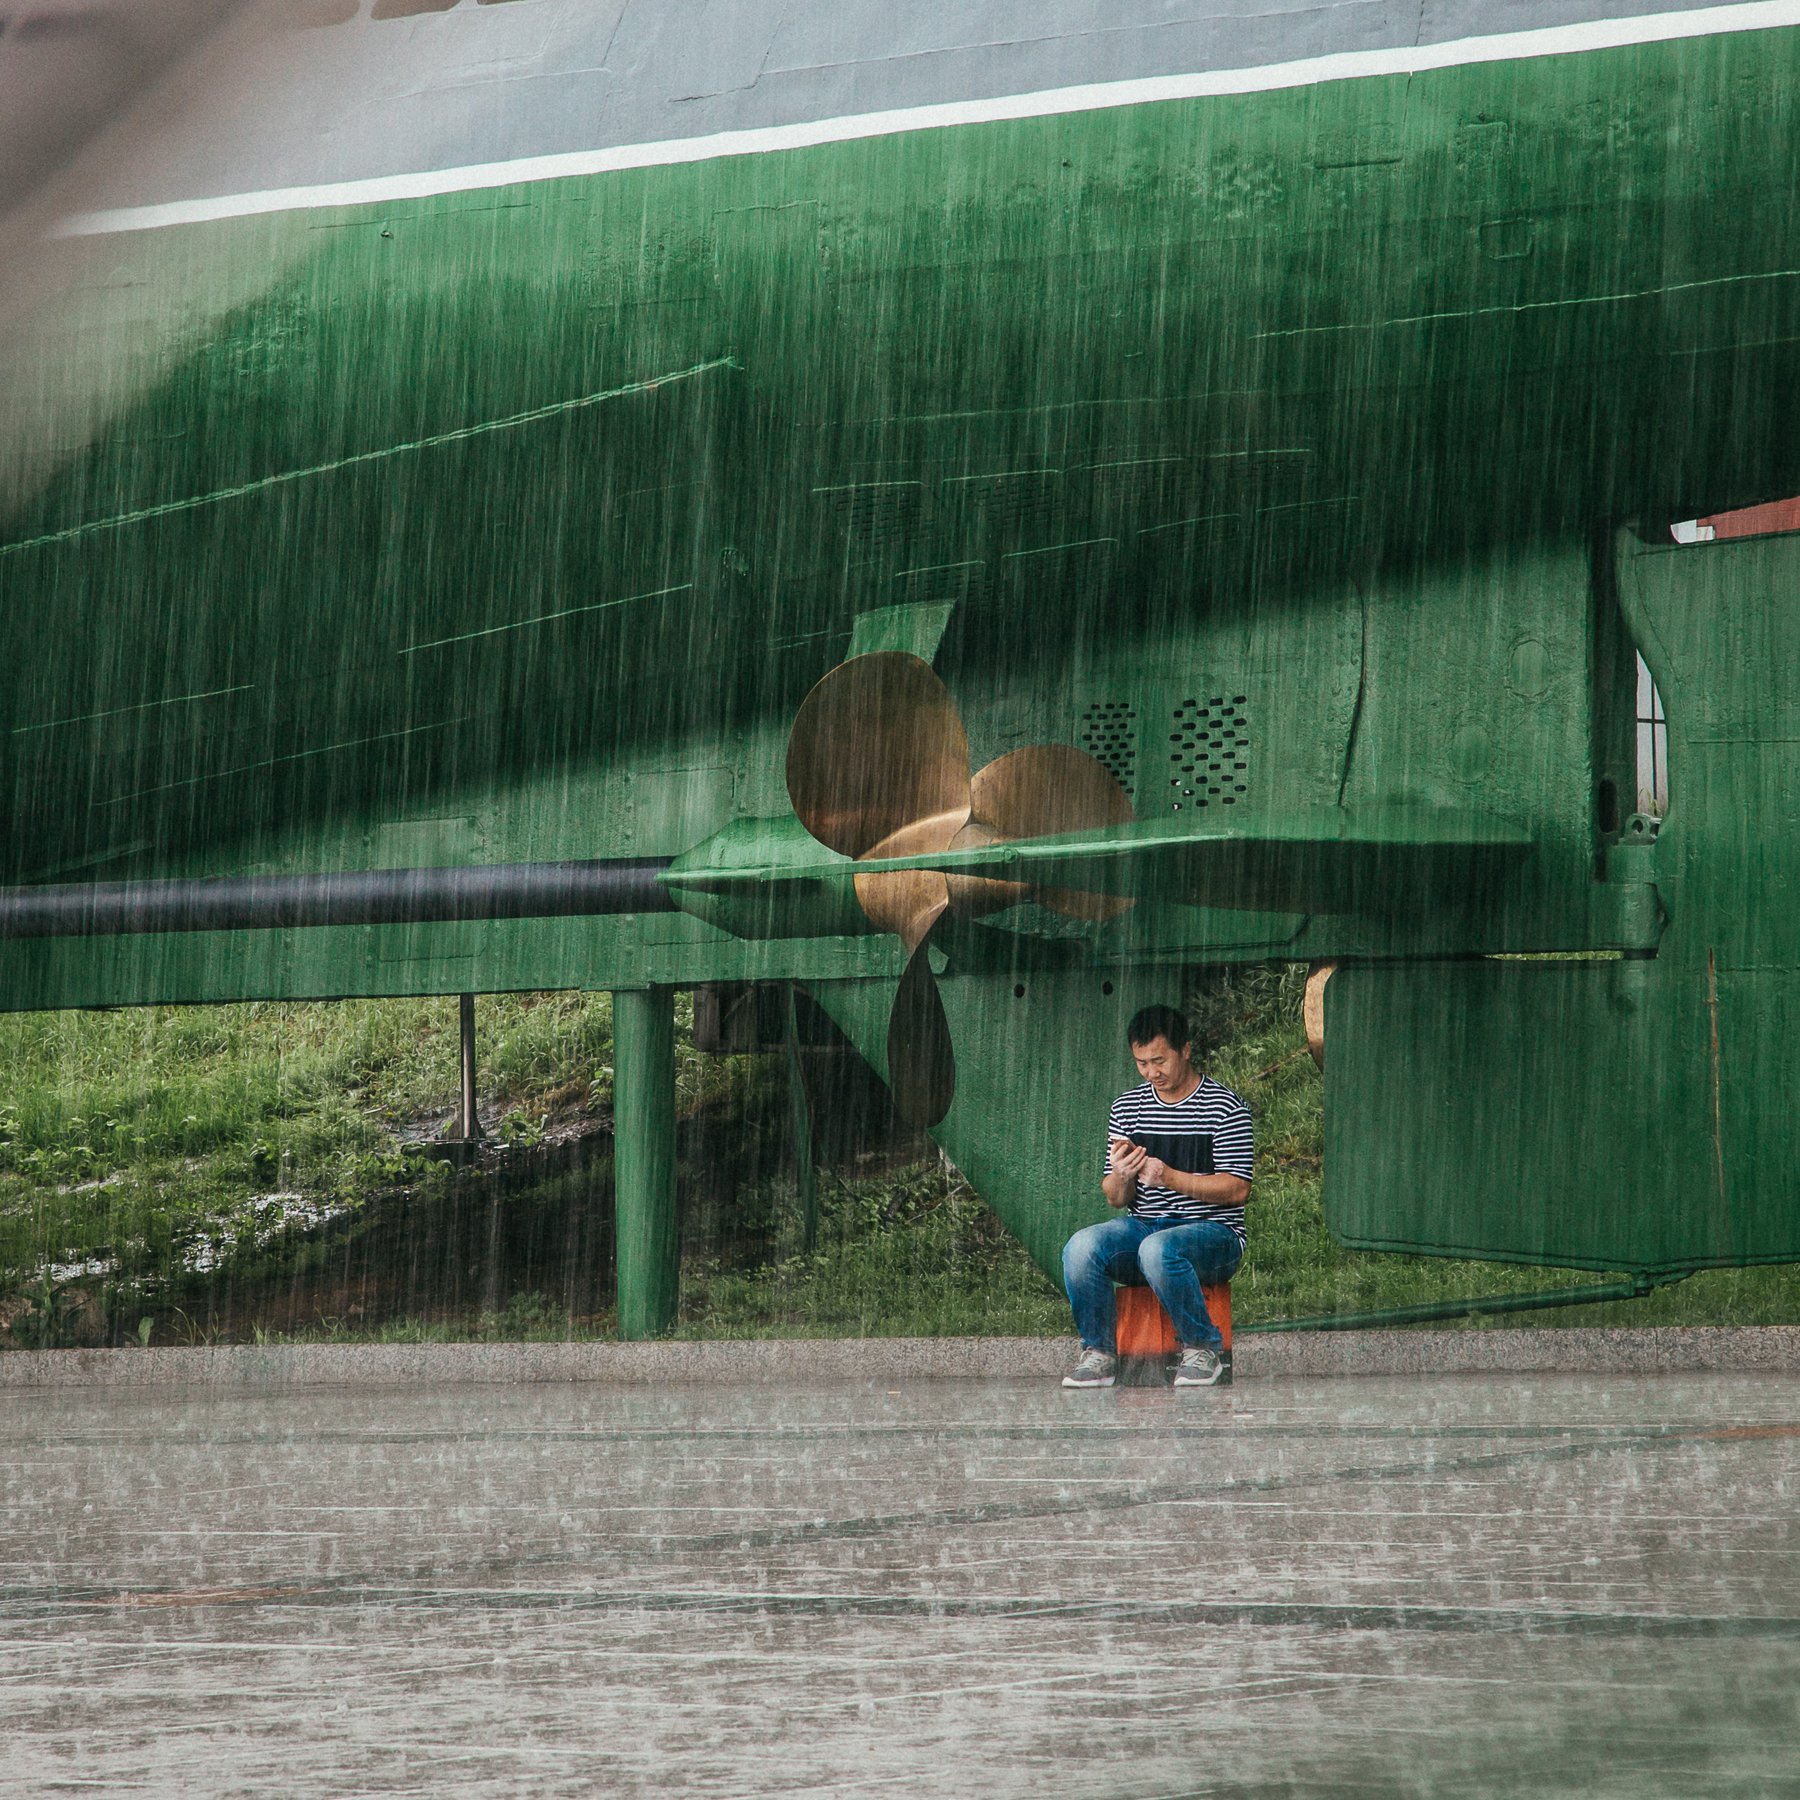 владивосток,город, дождь, подводная лодка, непогода, улица, Антон Блохин